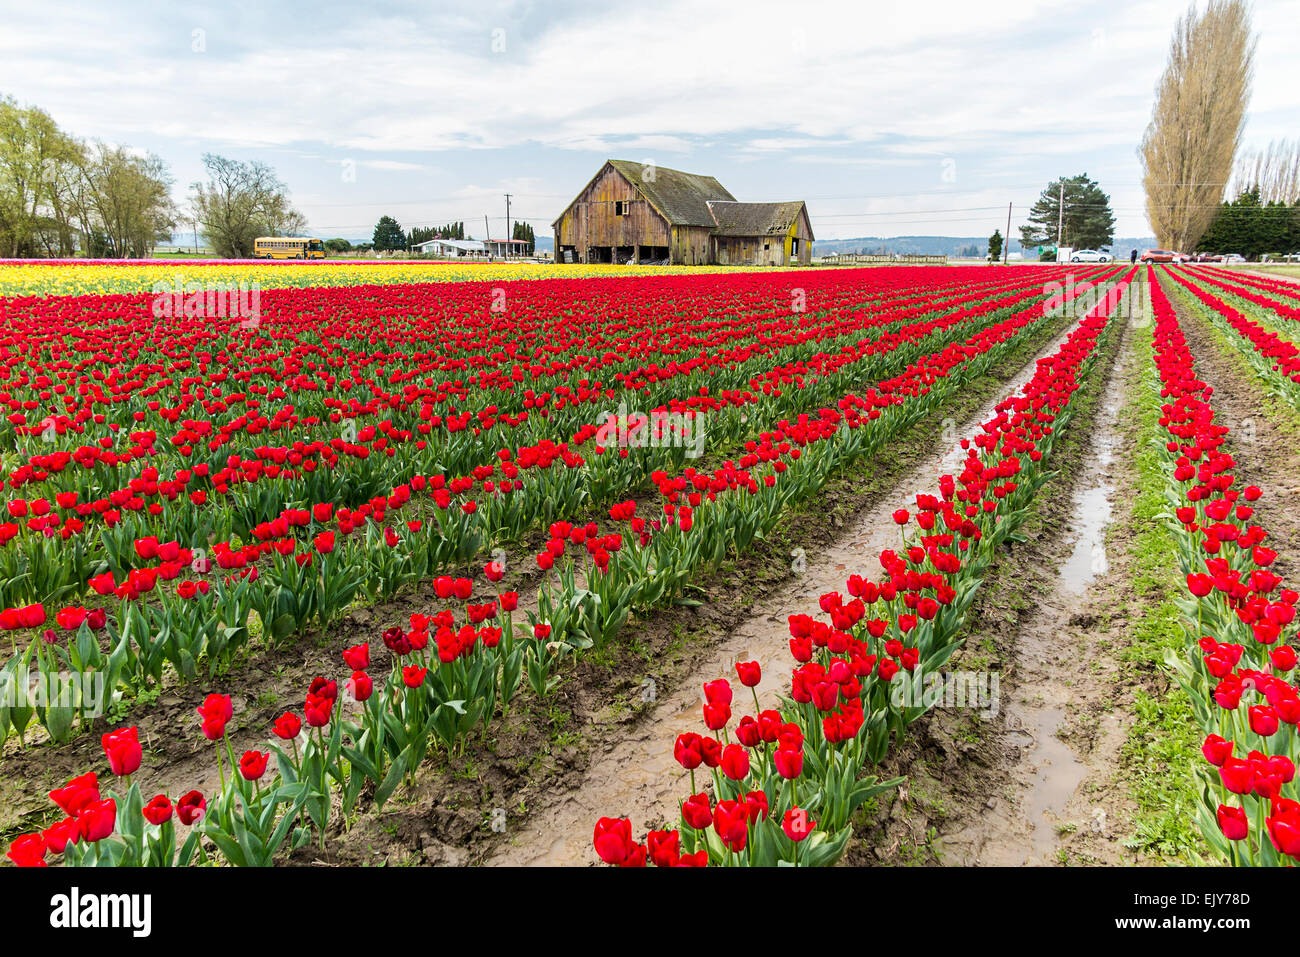 Bereich der roten Tulpen im Skagit Valley Tulip Festival mit Scheune im Hintergrund Stockfoto